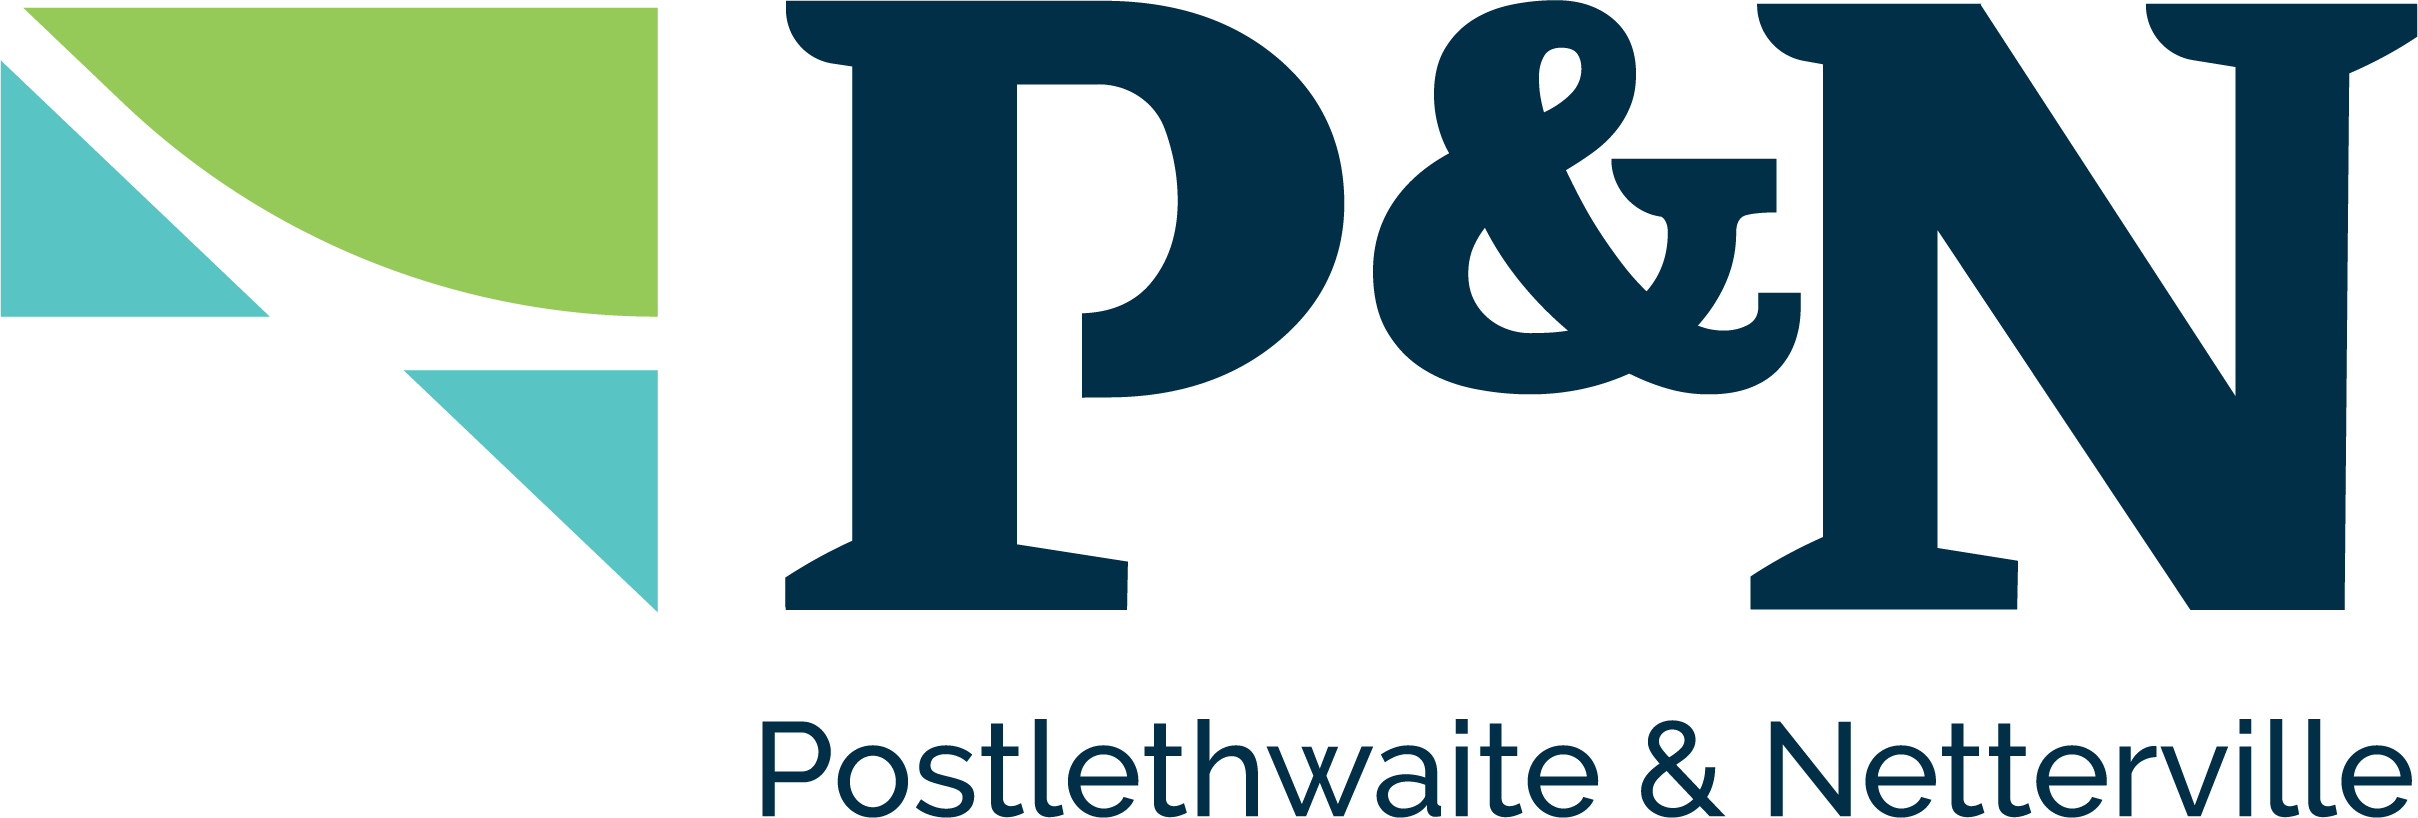 Postlethwaite & Netterville